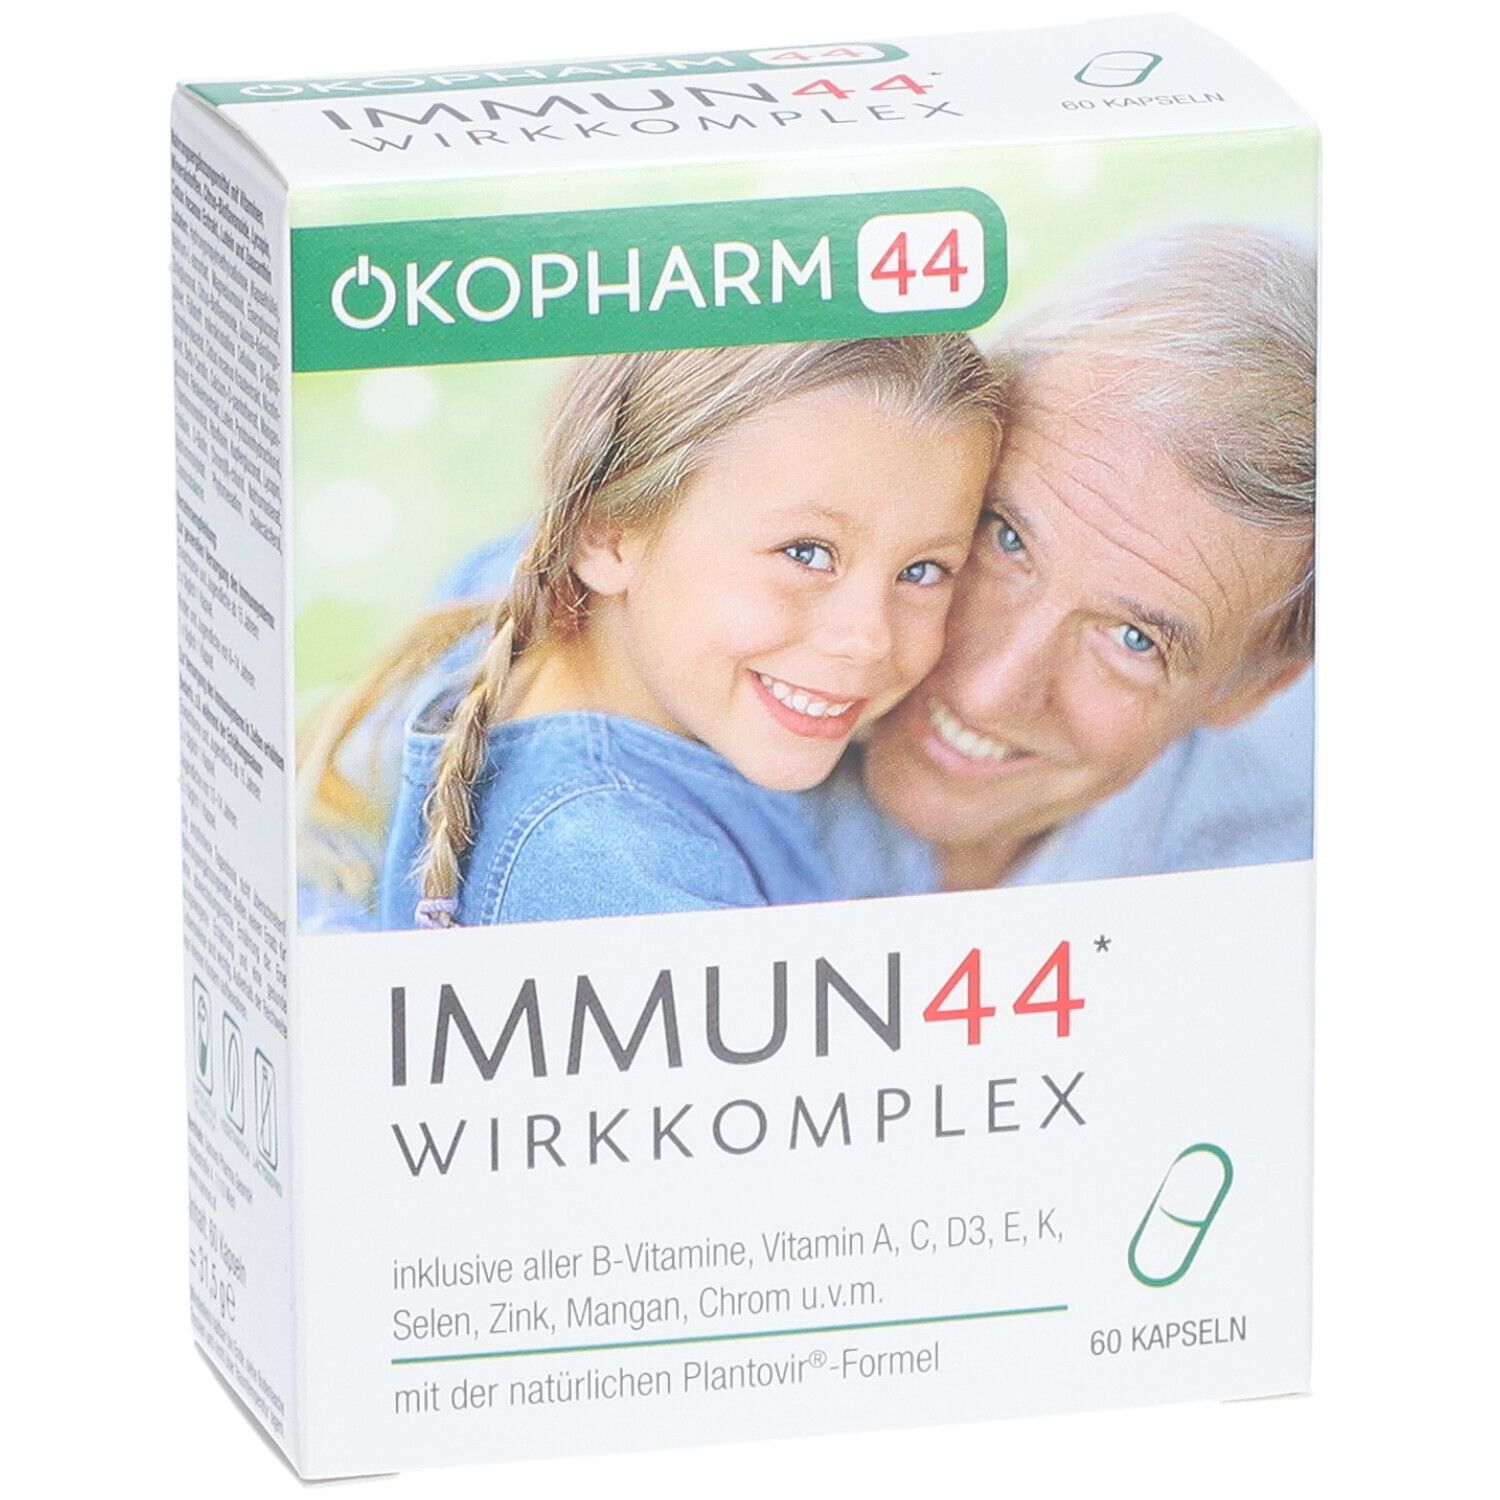 Ökopharm44® Immun44® Kapseln: Einfach in der Anwendung